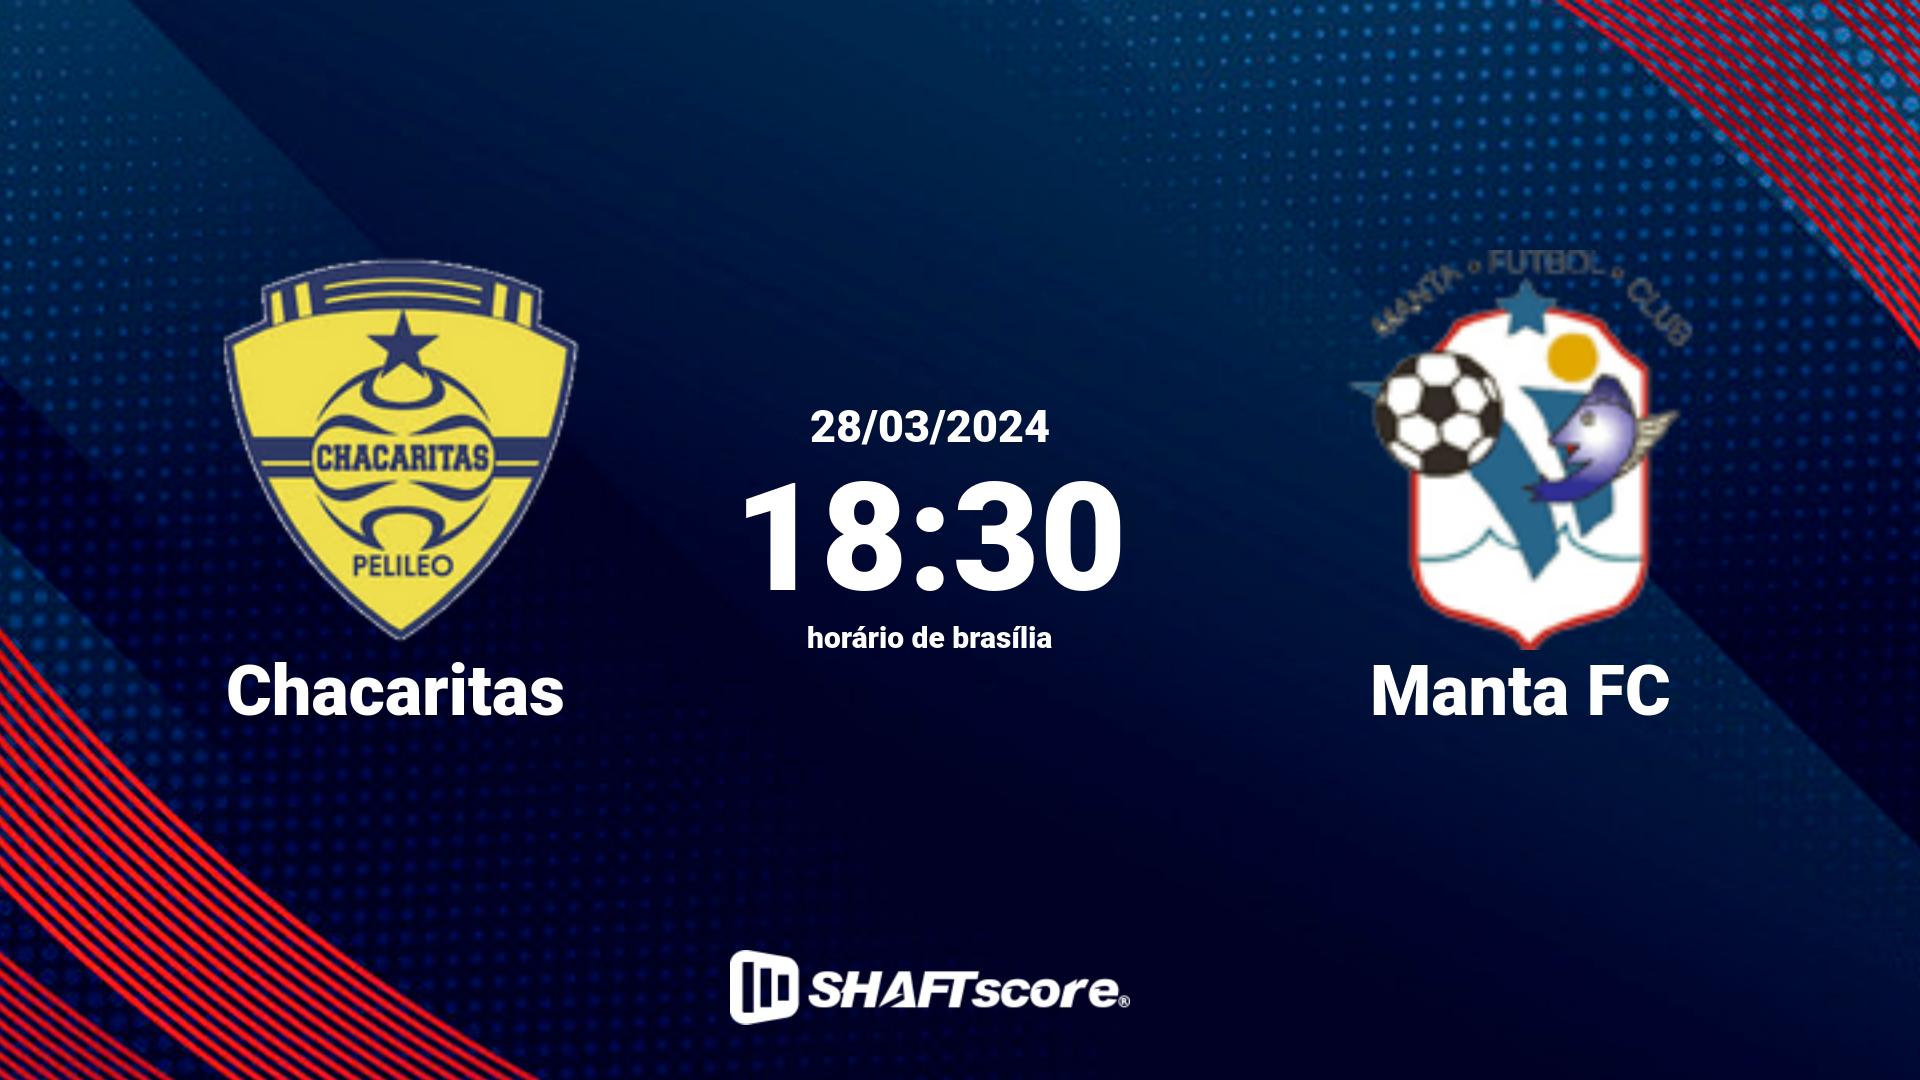 Estatísticas do jogo Chacaritas vs Manta FC 28.03 18:30